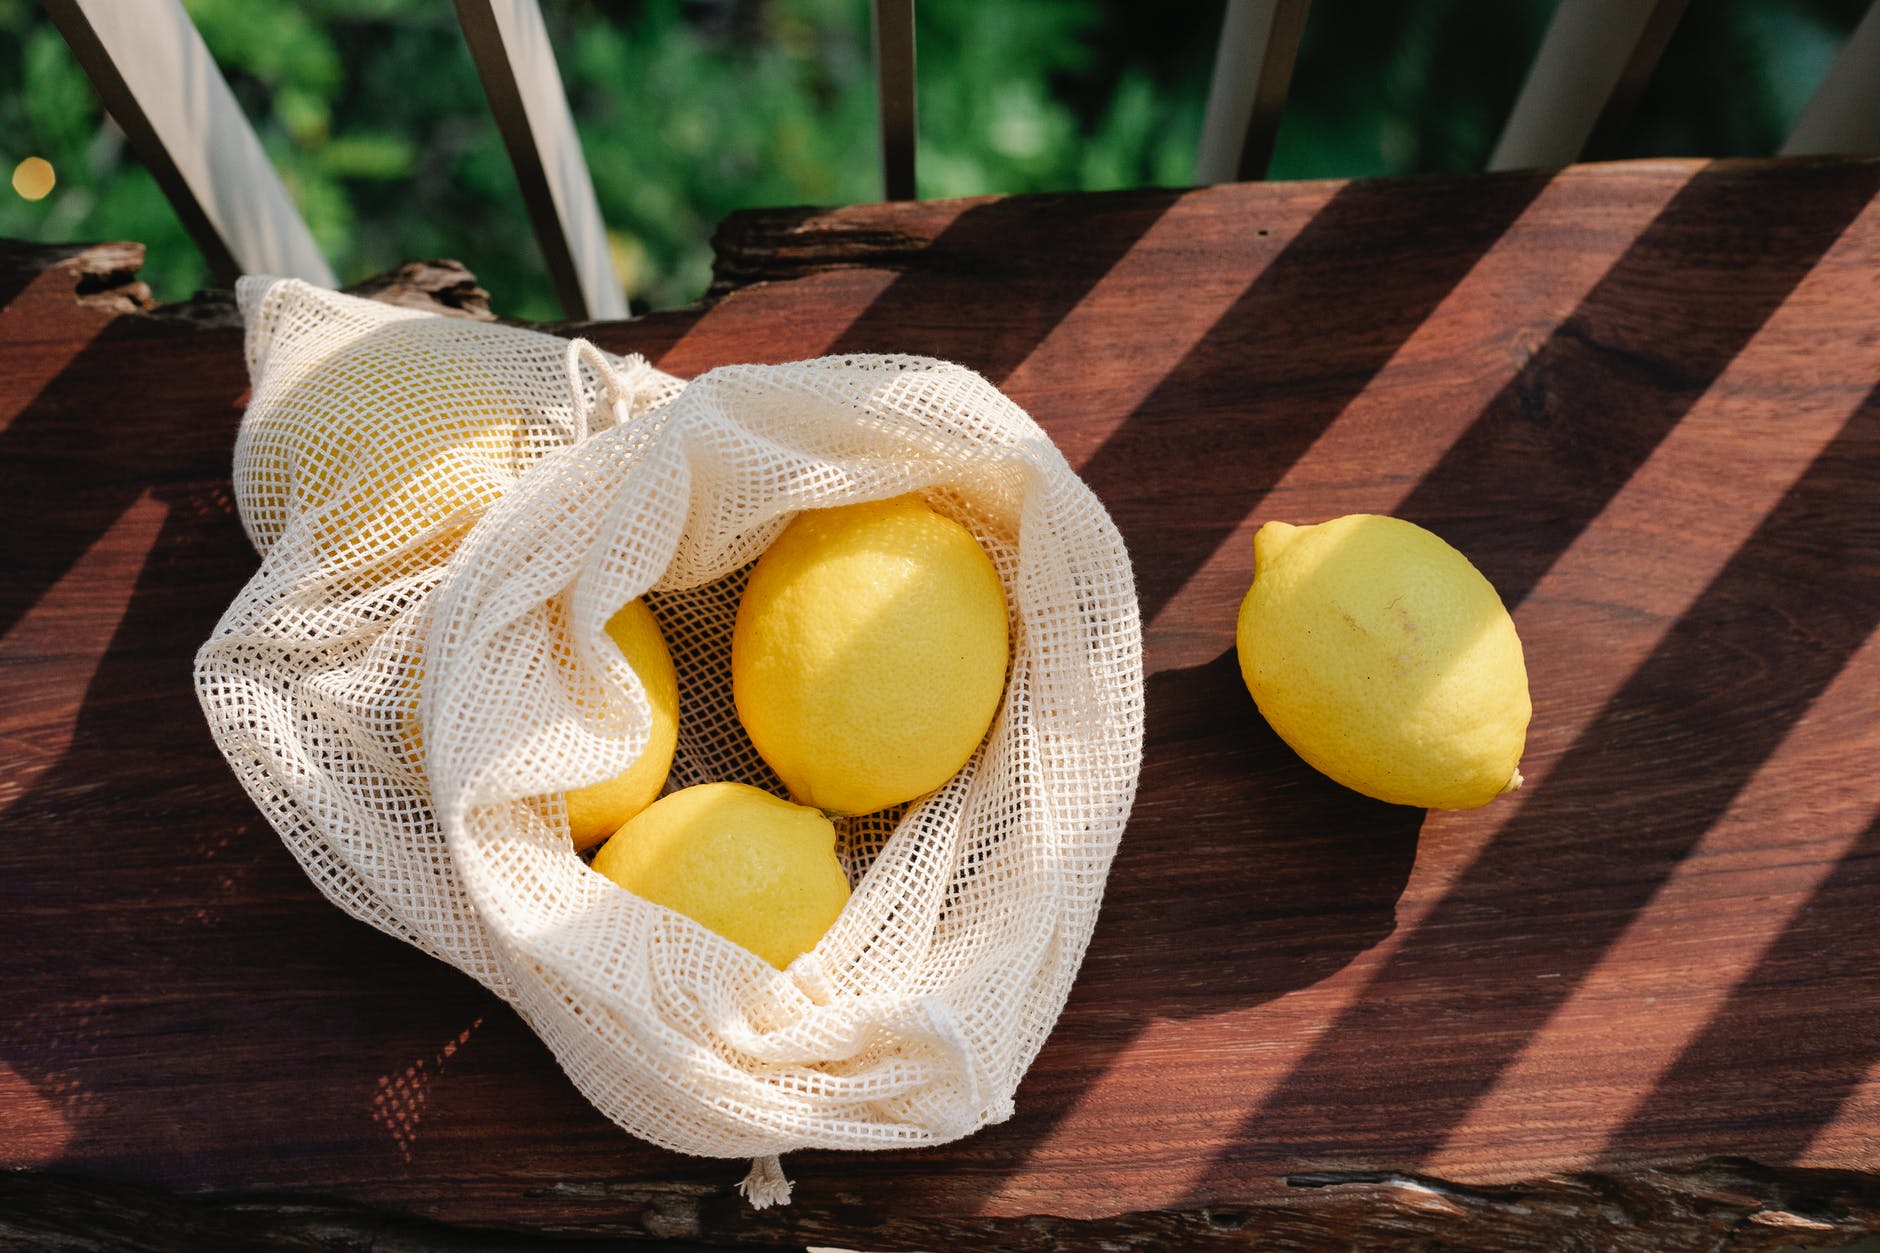 lemons in bag on wooden surface